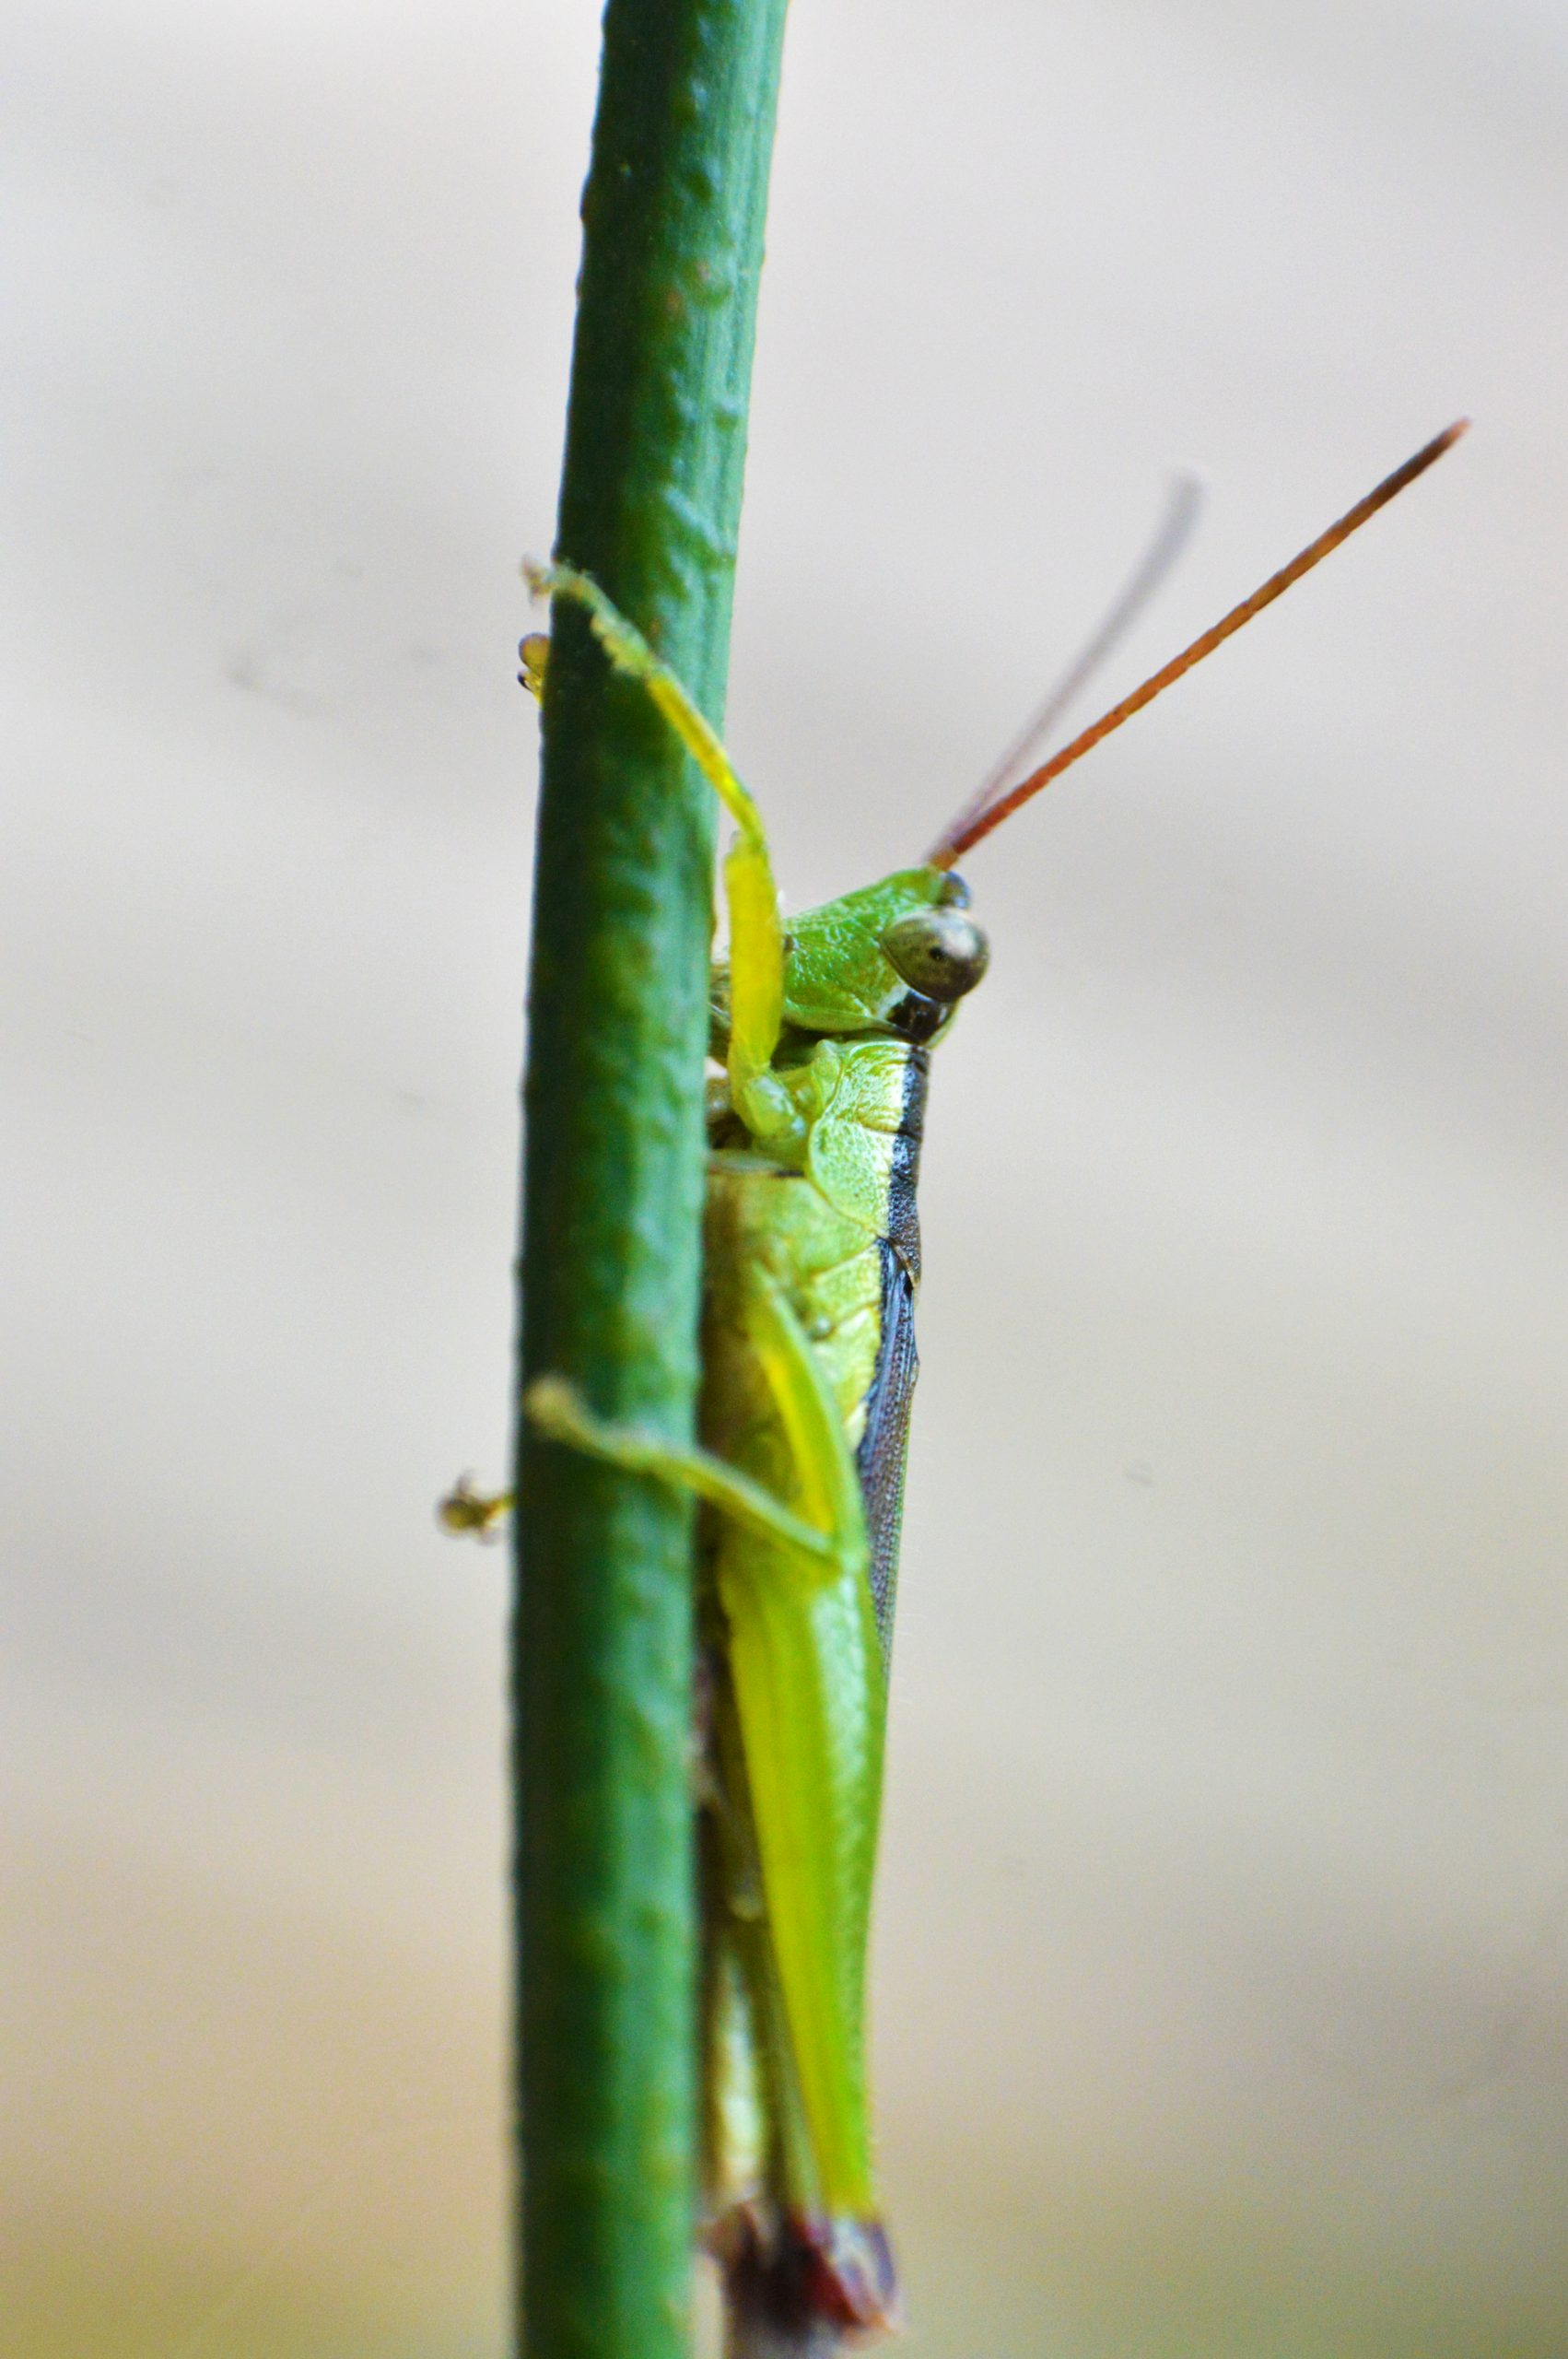 Grasshopper on twig